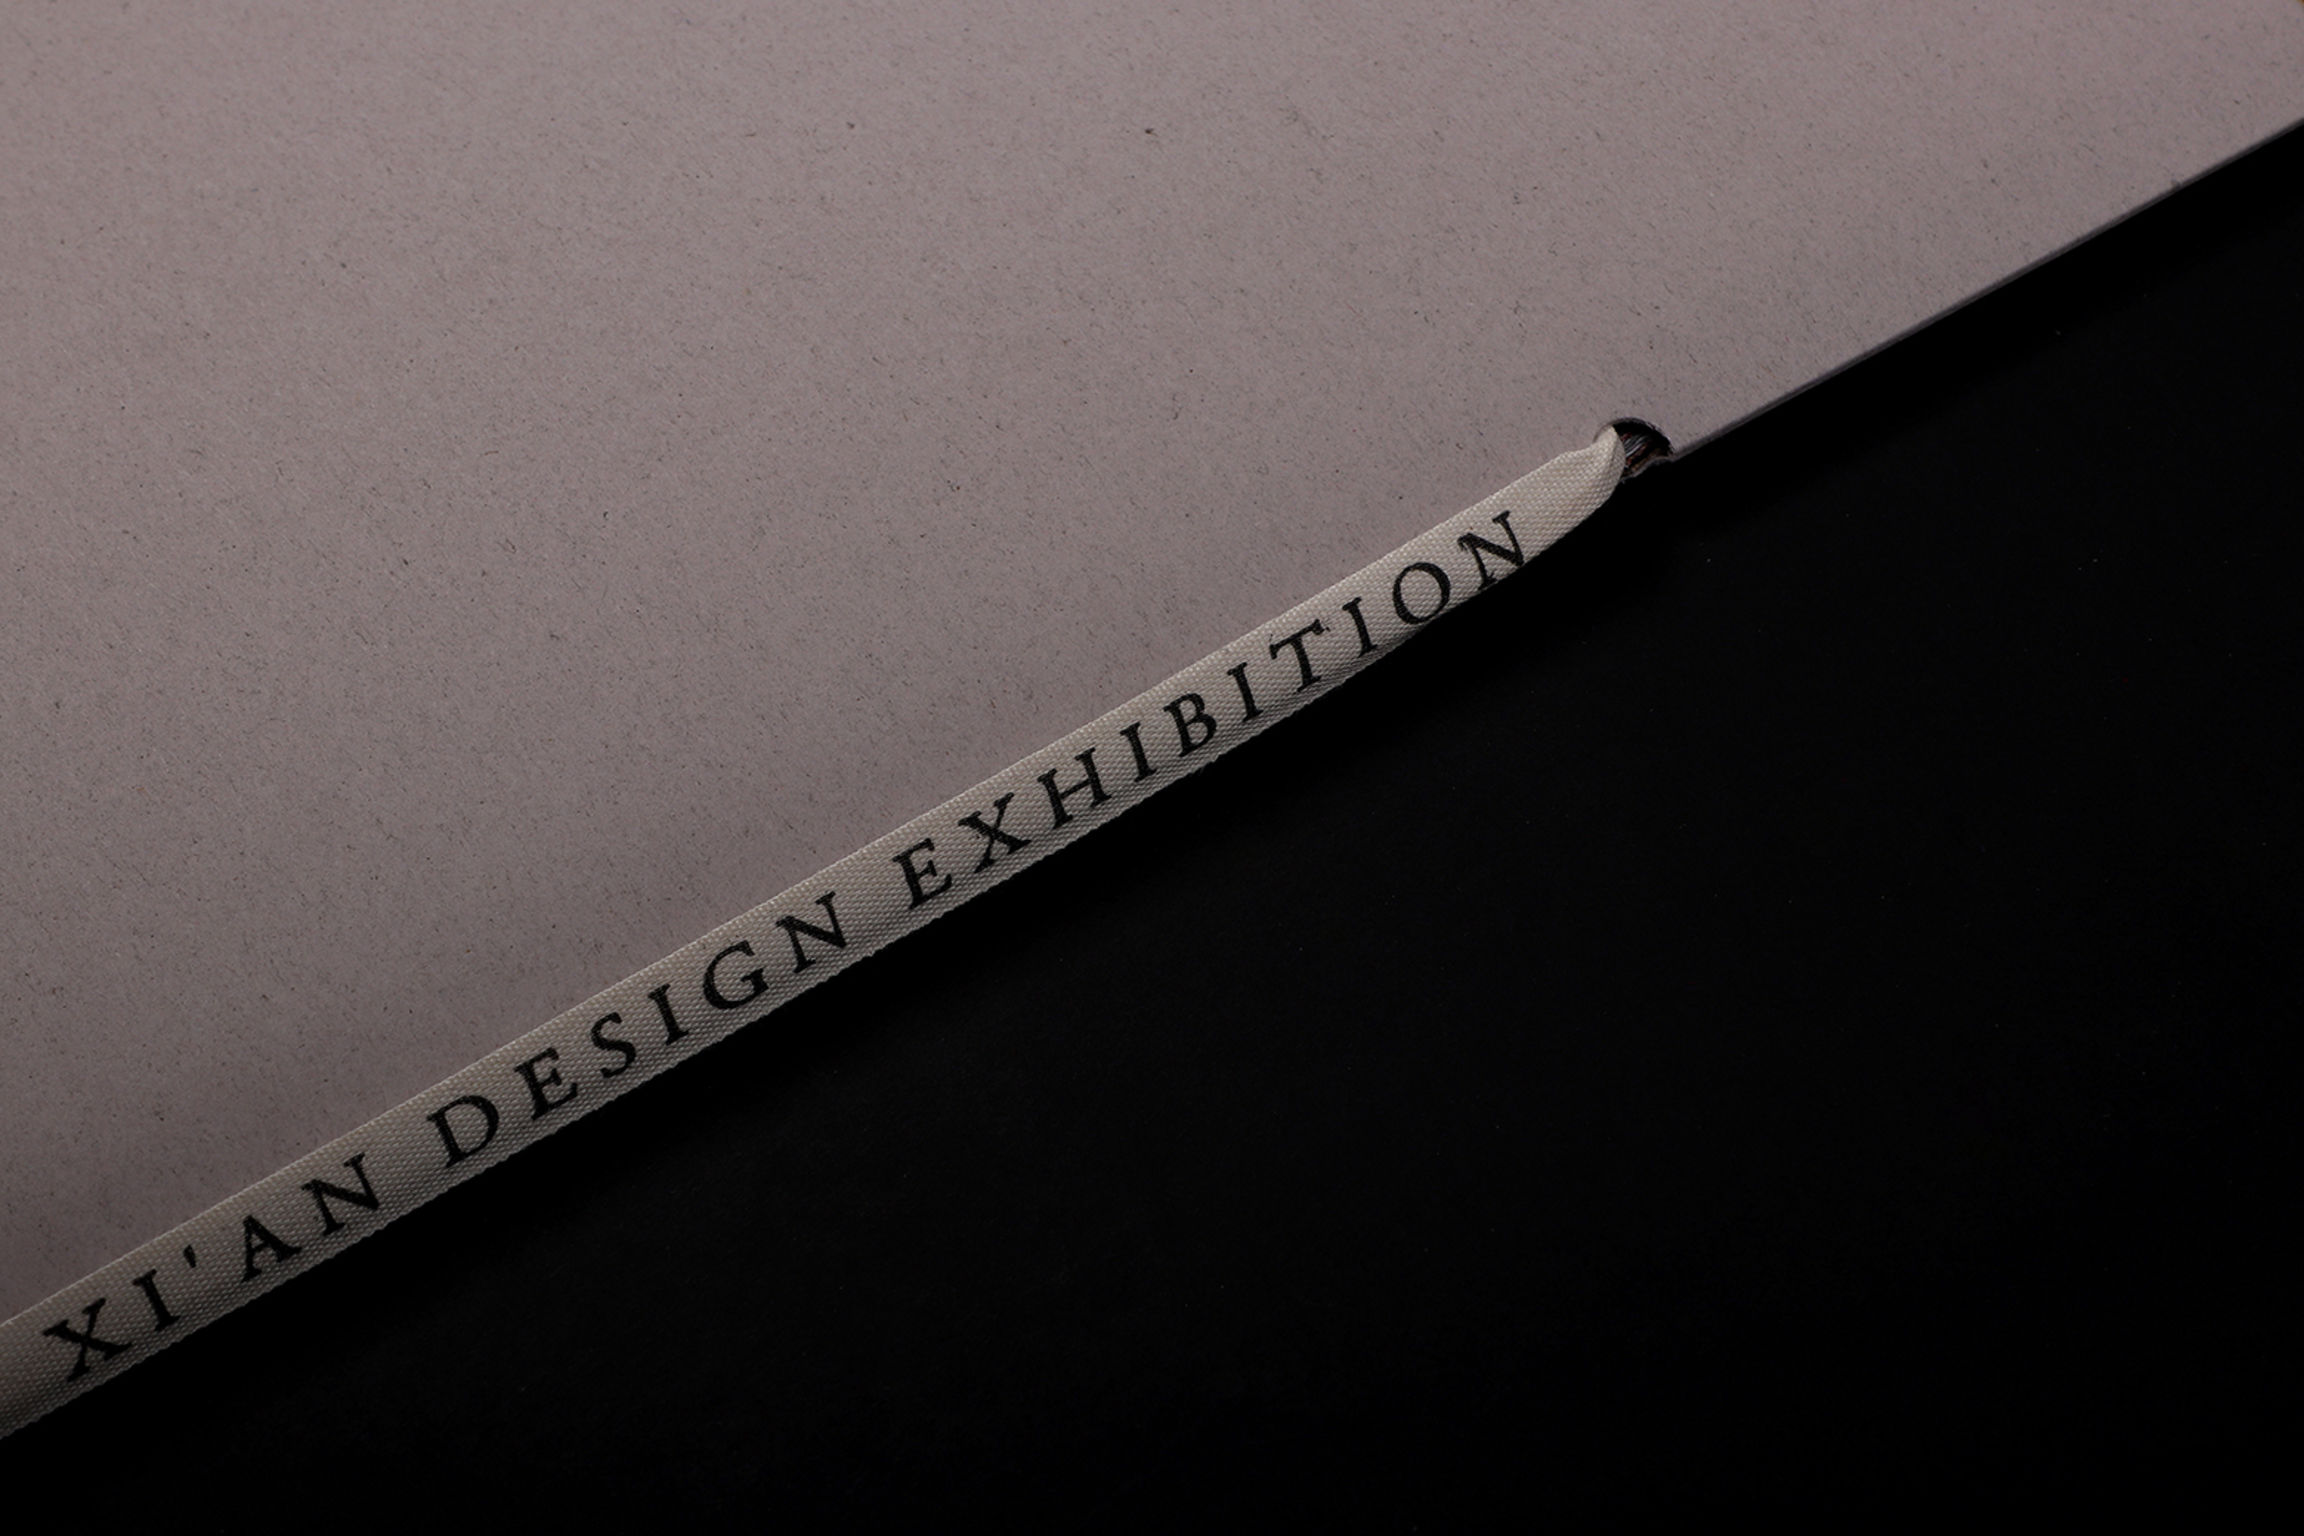 2020 Xi'an Design Exhibition